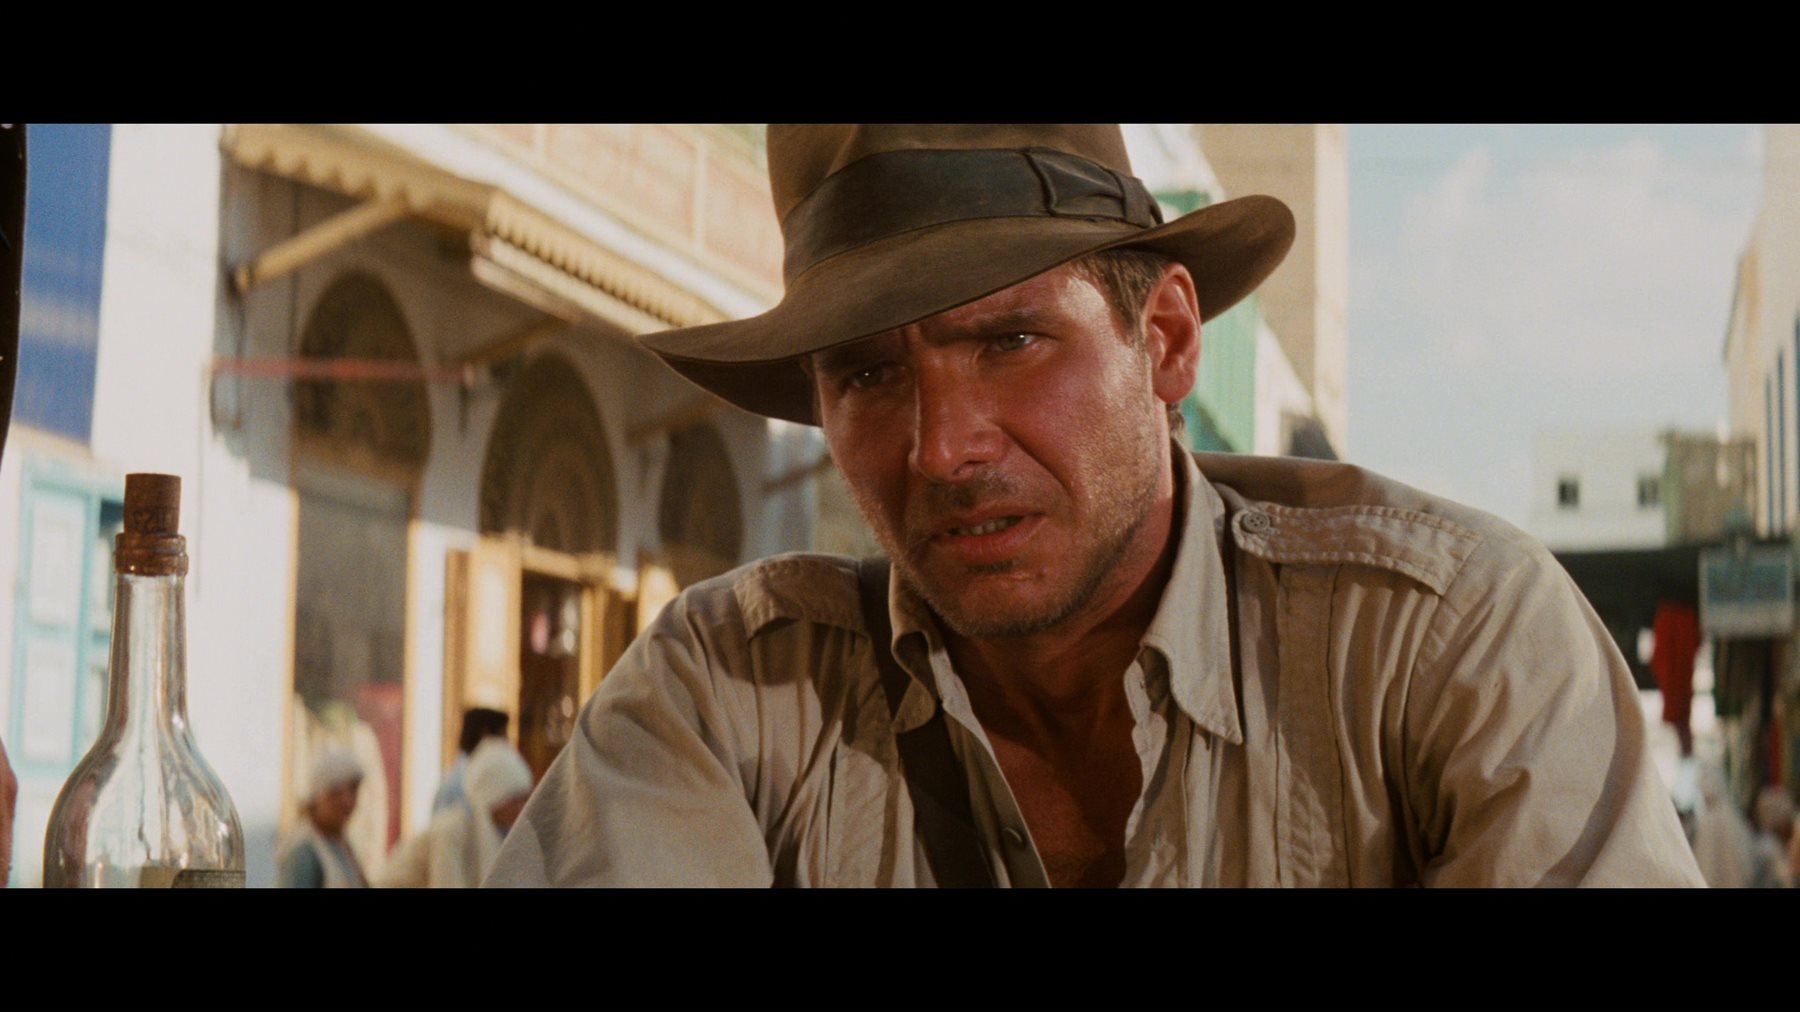 Analysis Of Indiana Jones And The Raiders